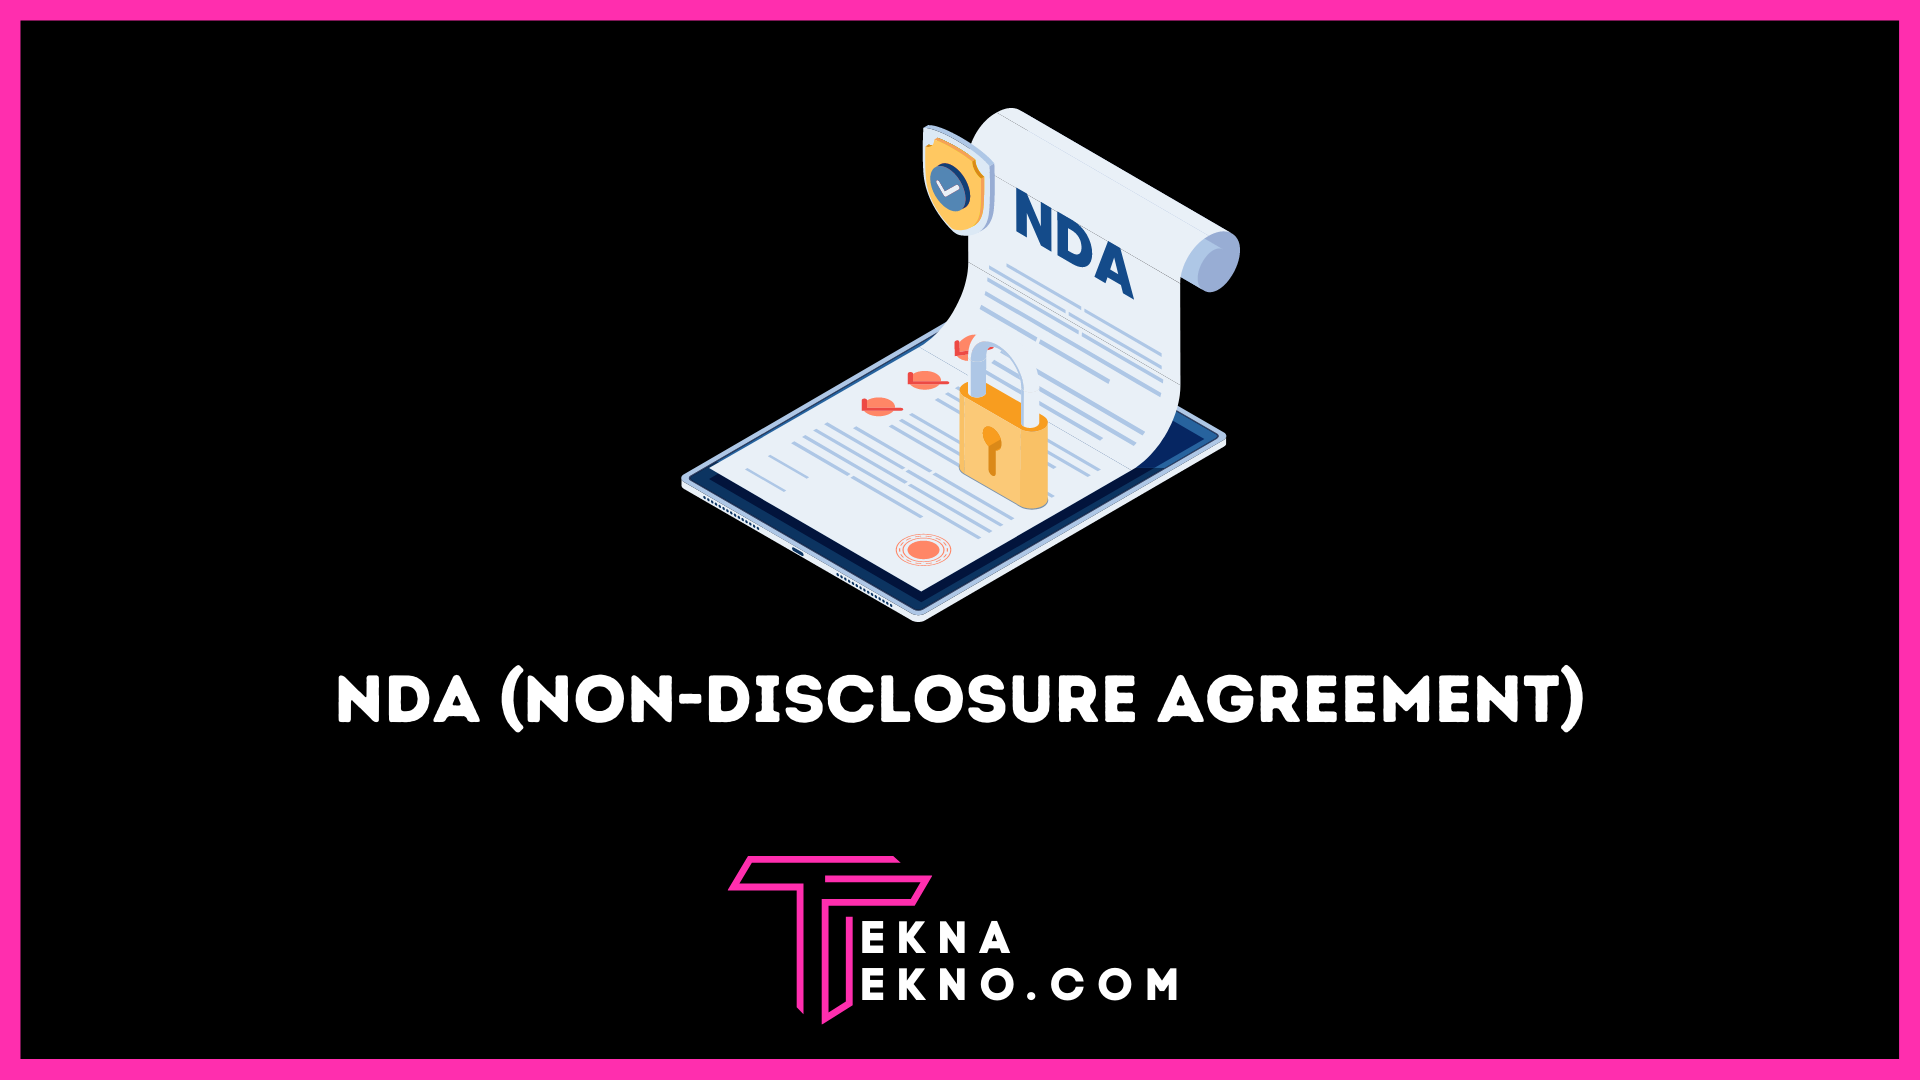 Apa itu NDA (Non-Disclosure Agreement)? Definisi, Fungsi dan Jenisnya